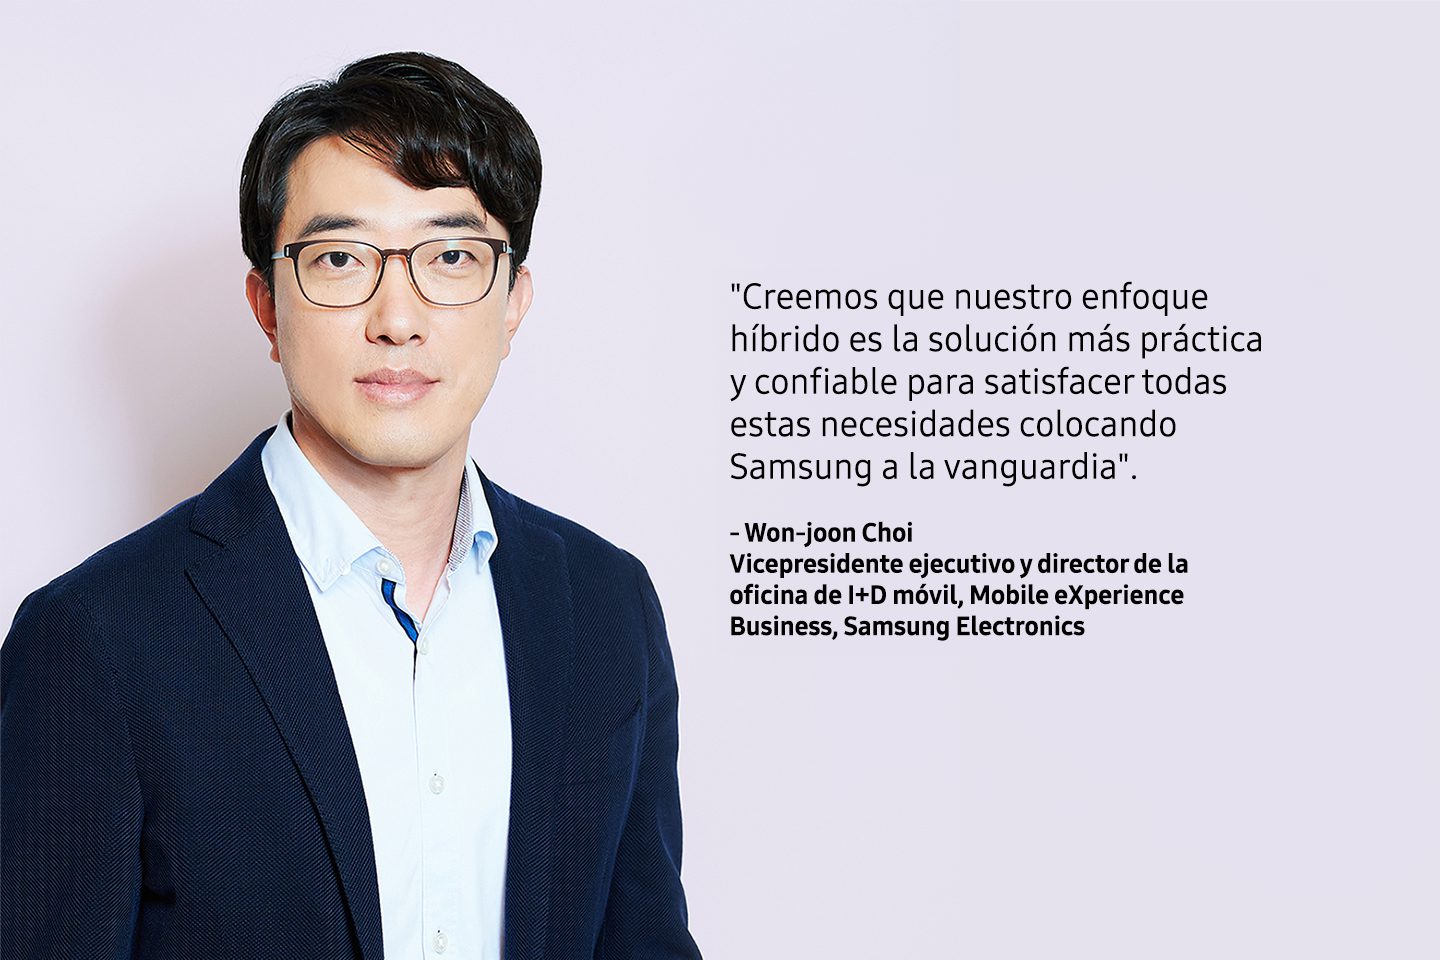 Samsung: La Inteligencia Artificial híbrida centrada en el ser humano abre nuevas posibilidades